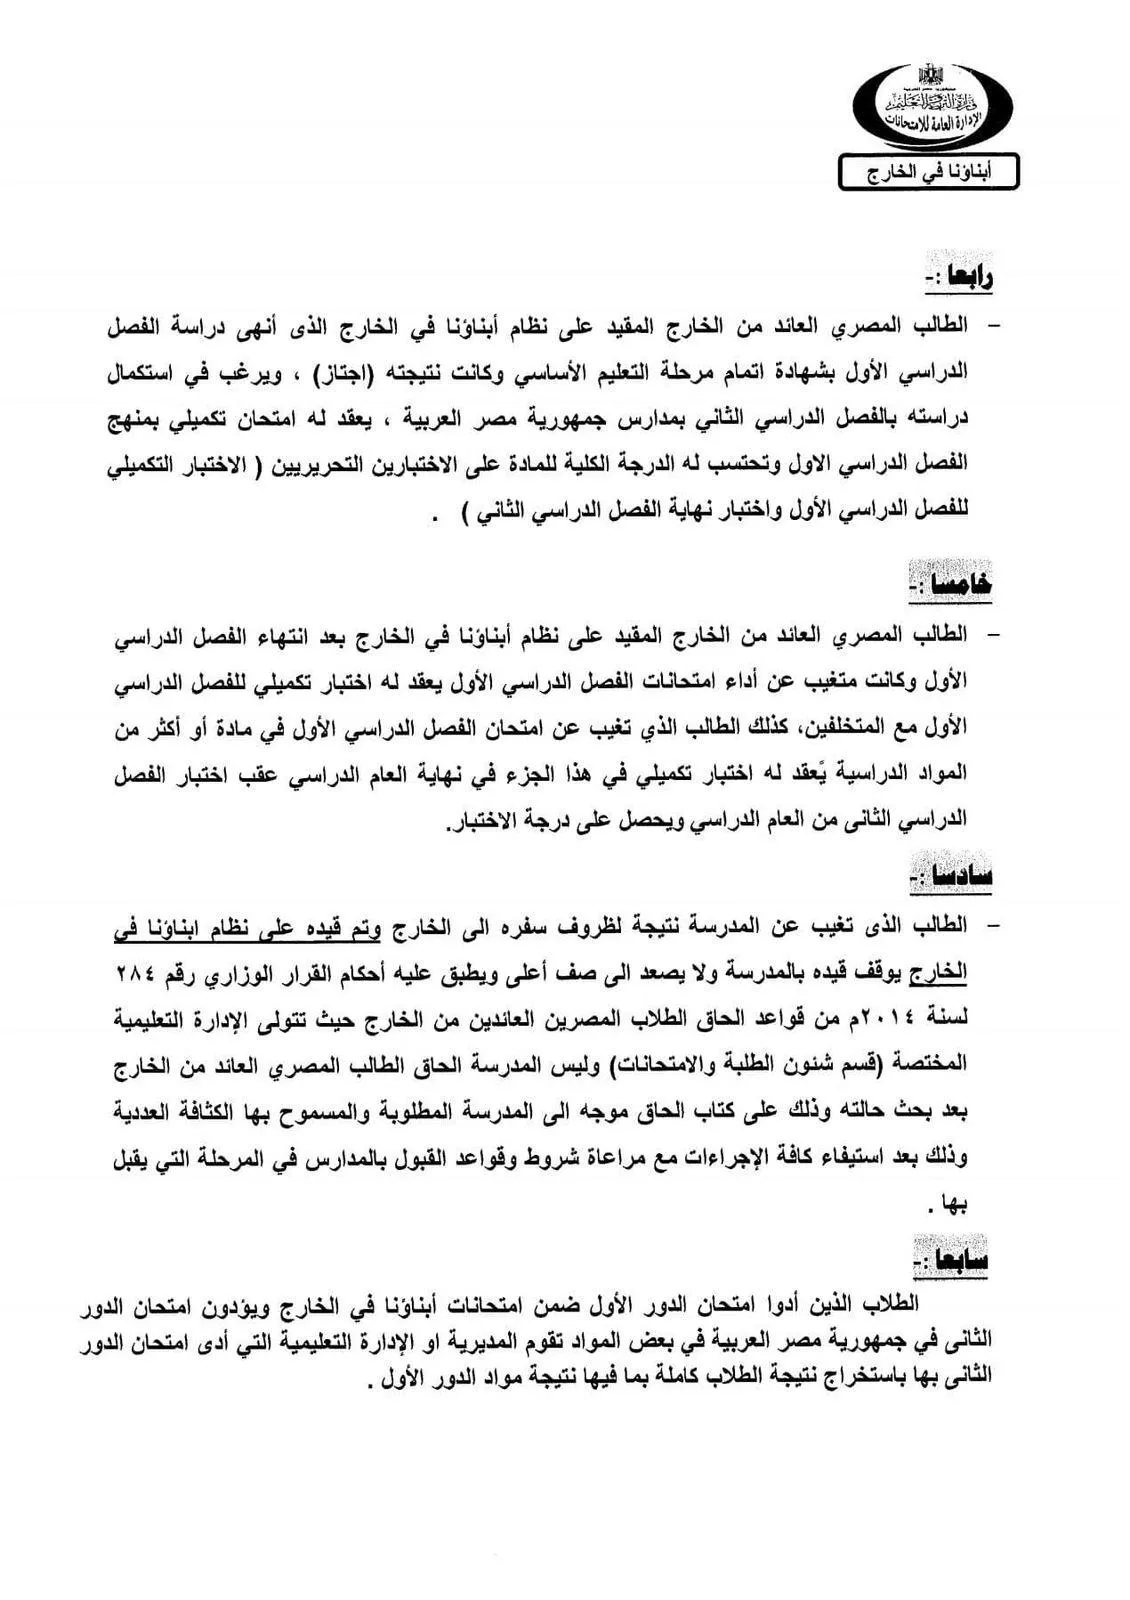 وزارة التعليم : تحدد ضوابط إلحاق الطلبة العائدين من الخارج بالمدارس المصرية " مستند "